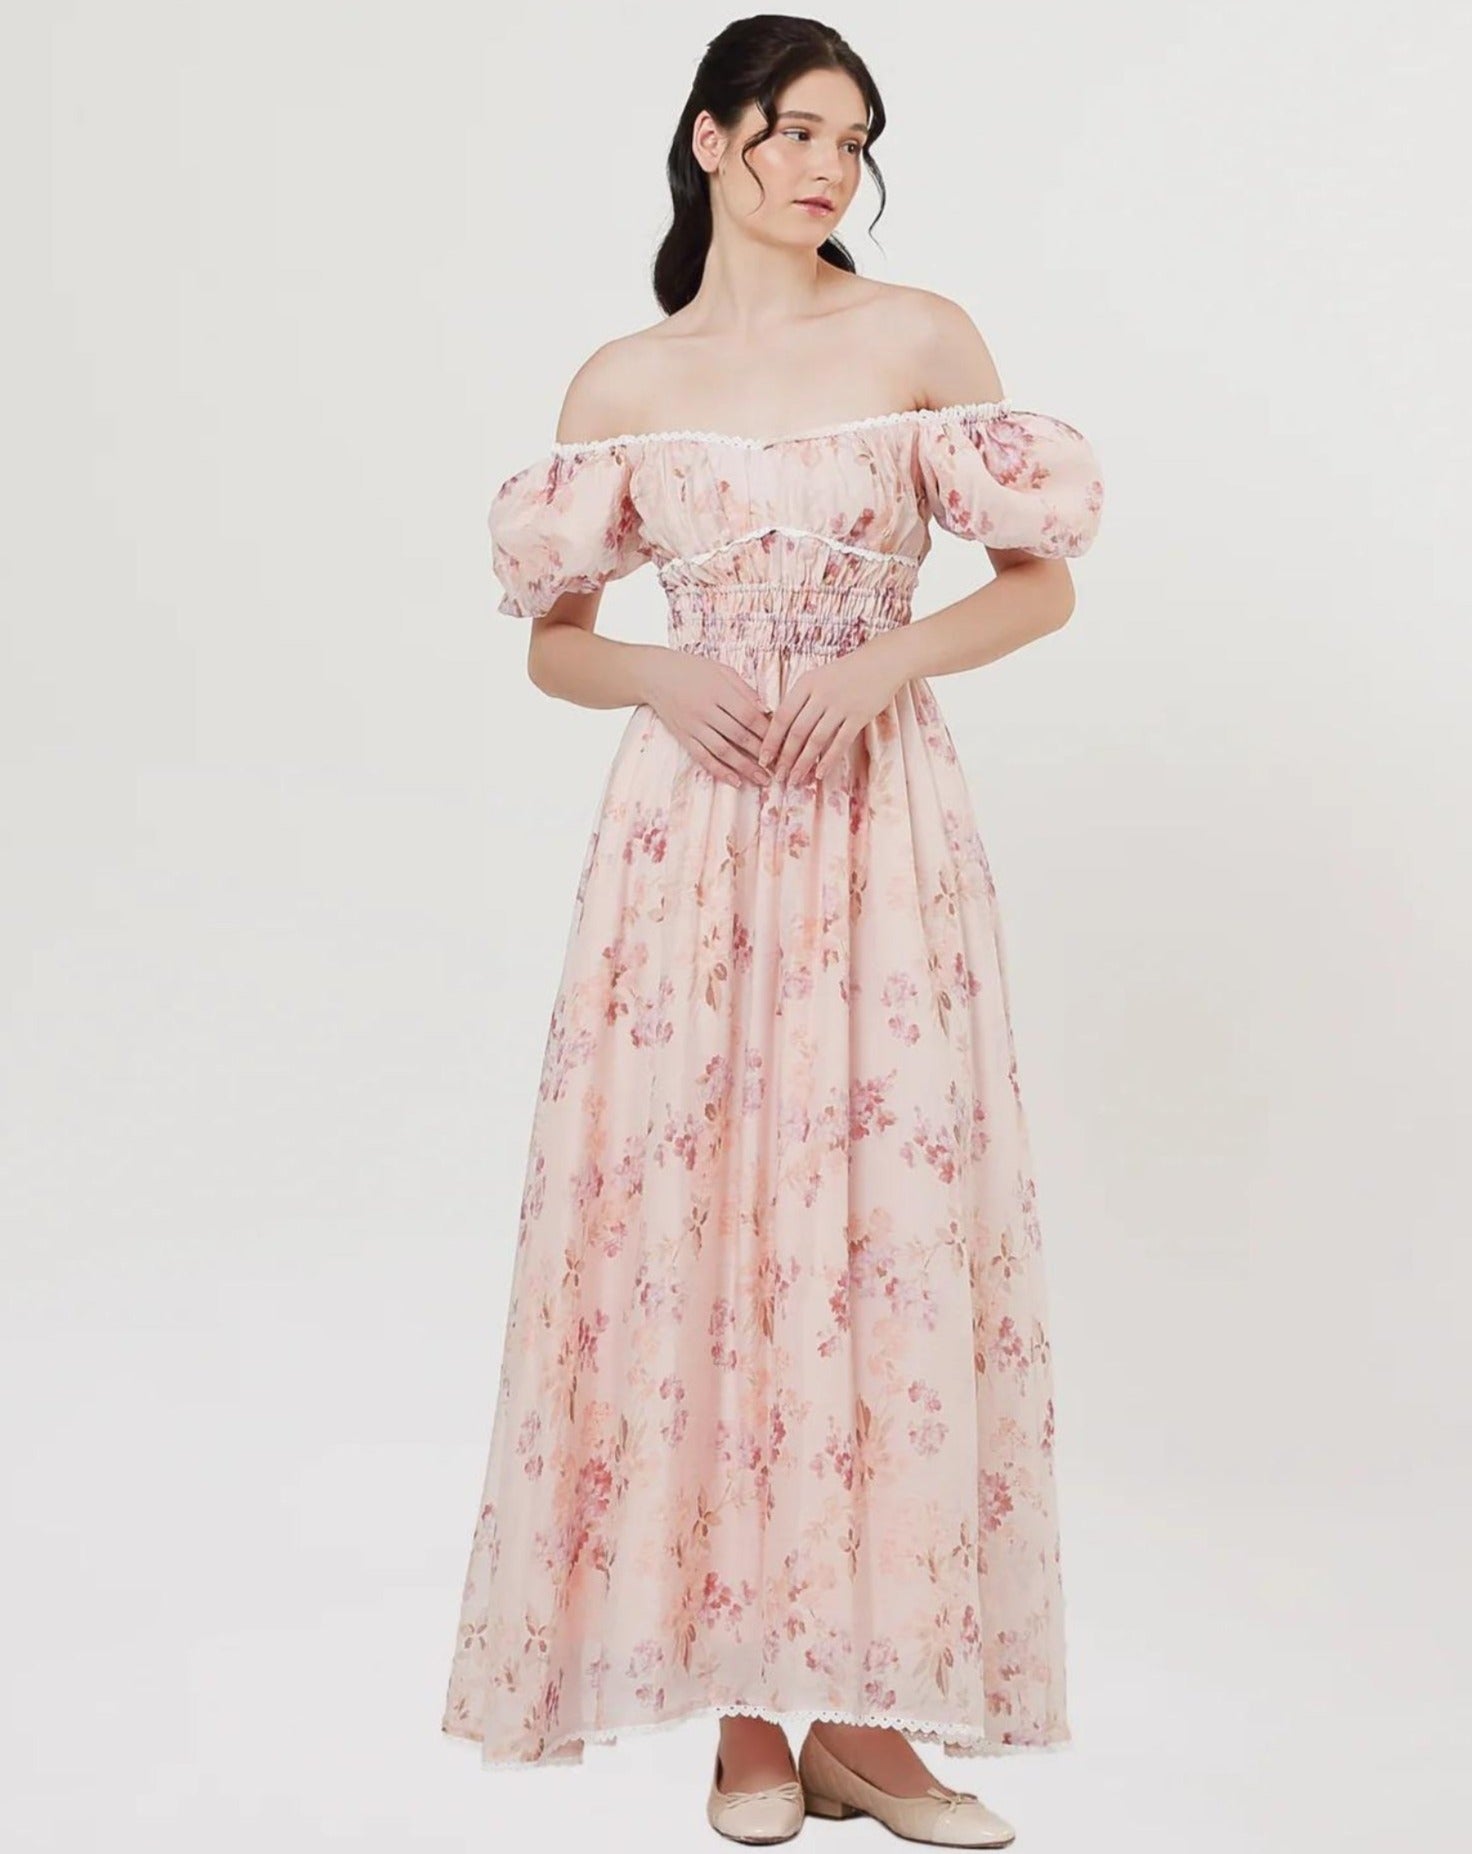 Isabella Dress in Floral Pink (2 LEFT)